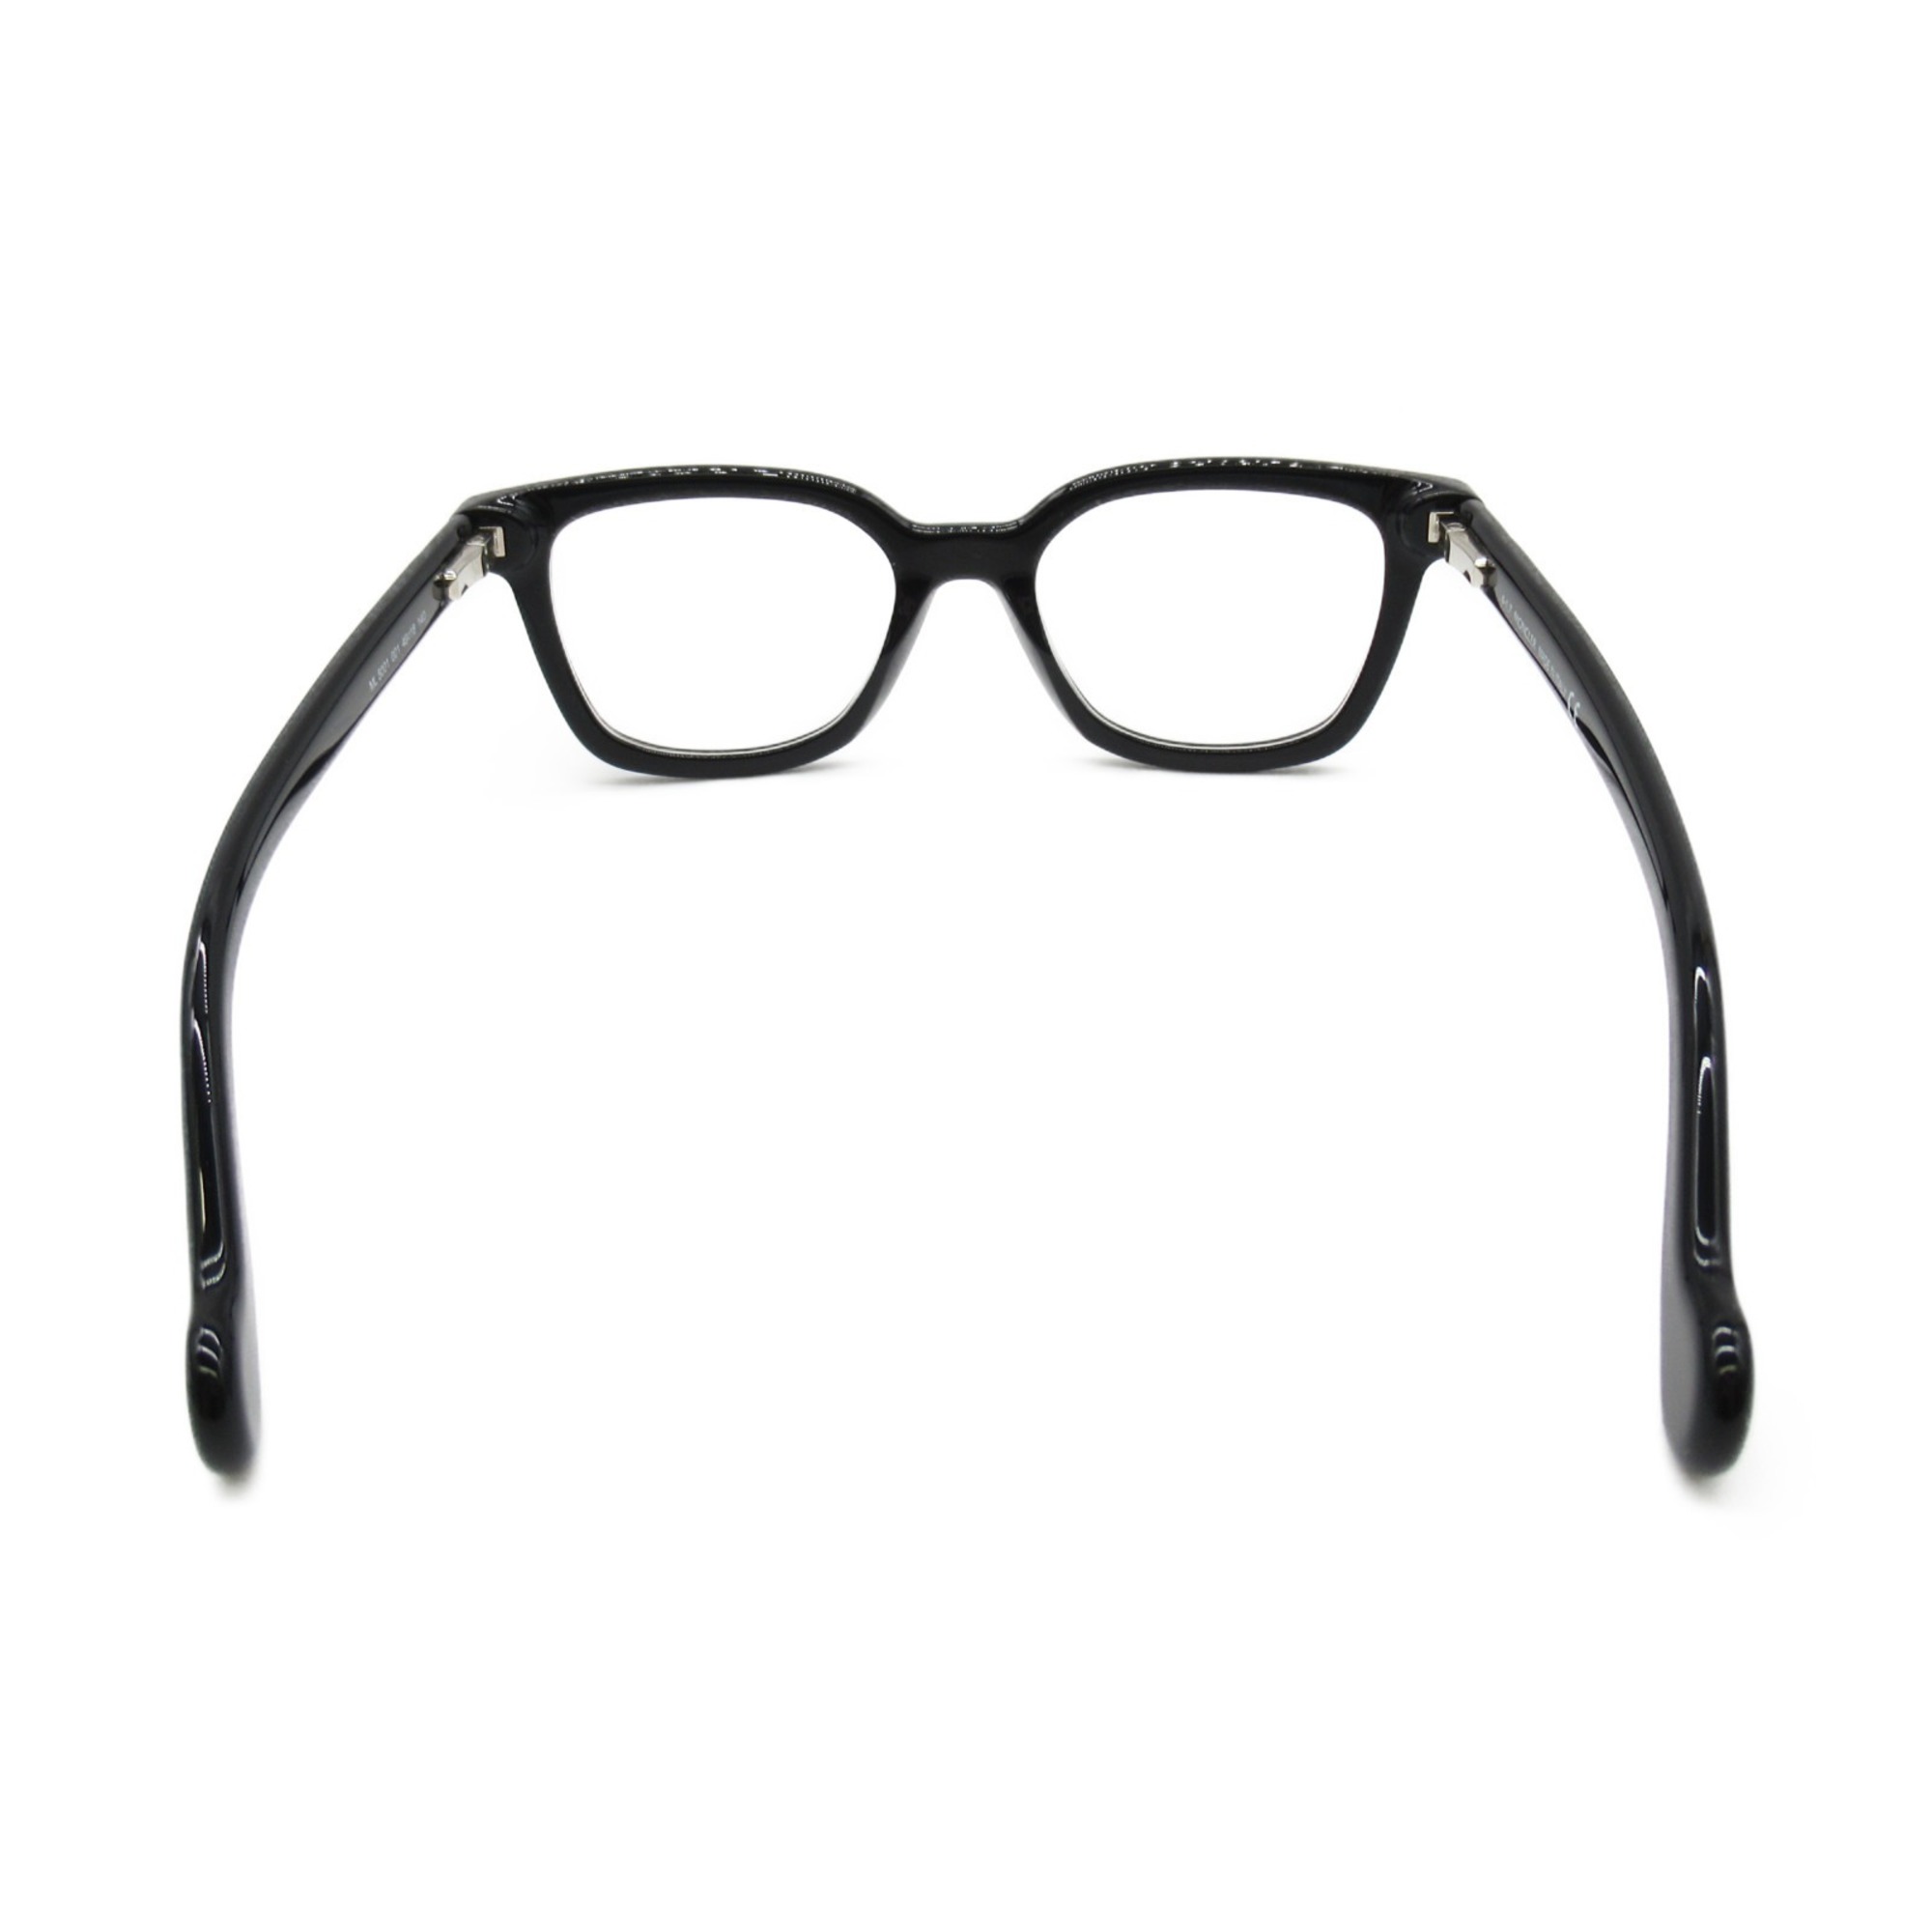 MONCLER Date Glasses Glasses Frame Black Plastic 5001 001(49)